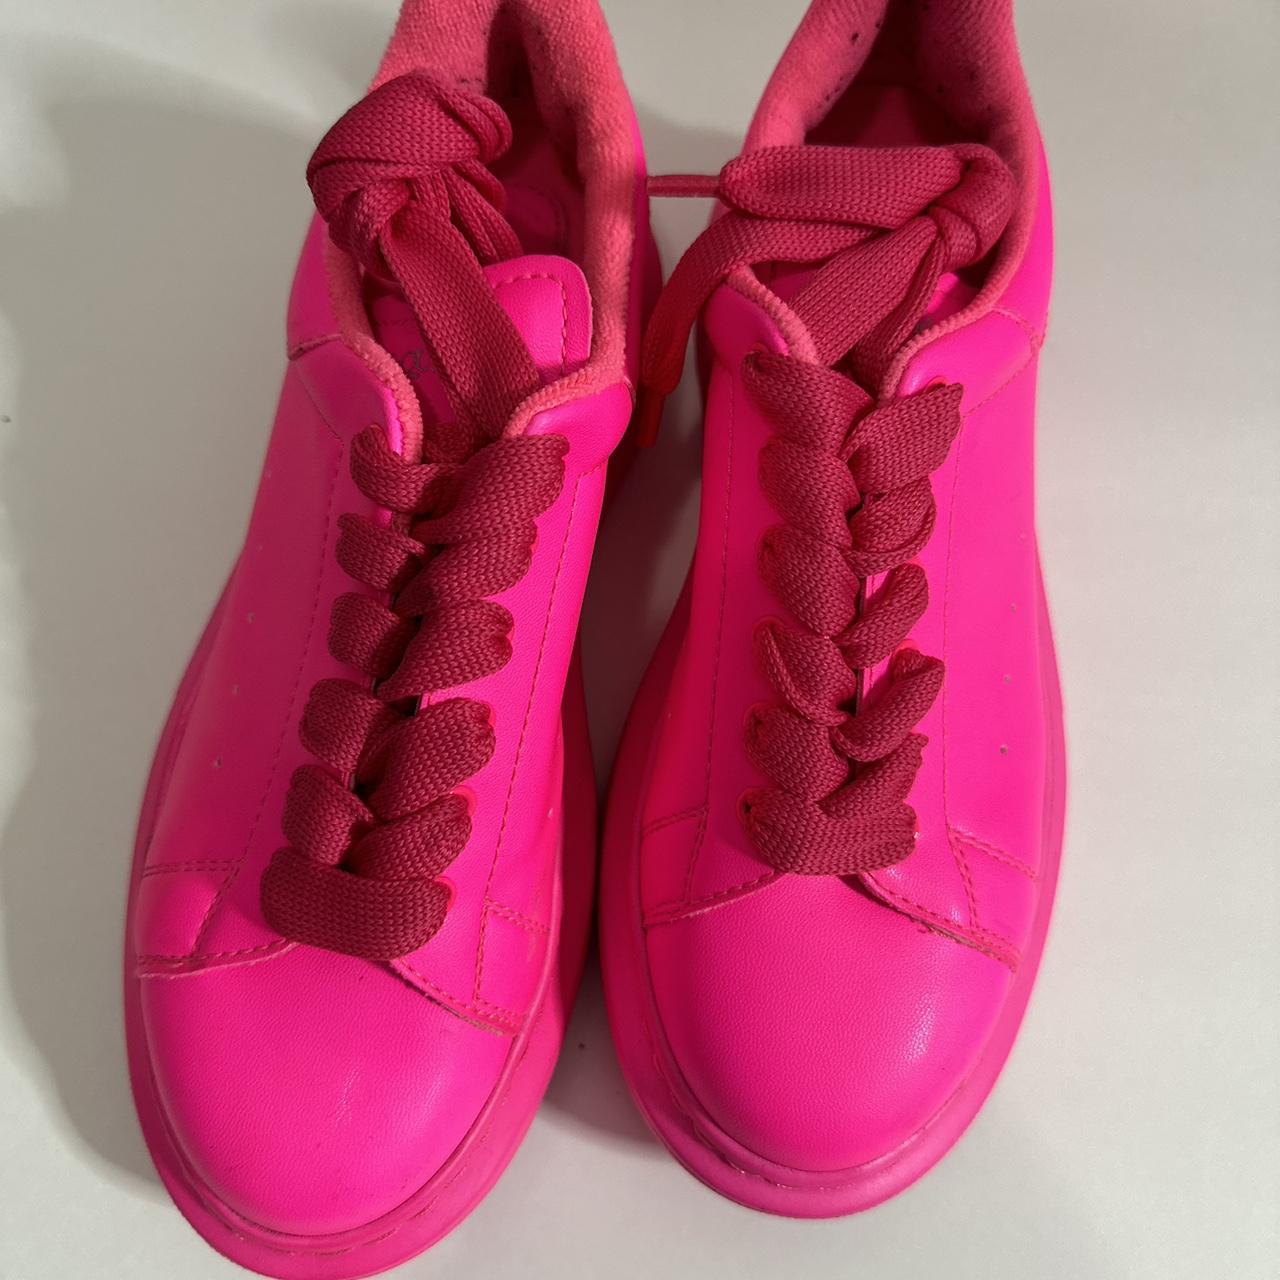 Neon pink Alexander McQueen sneakers - Depop